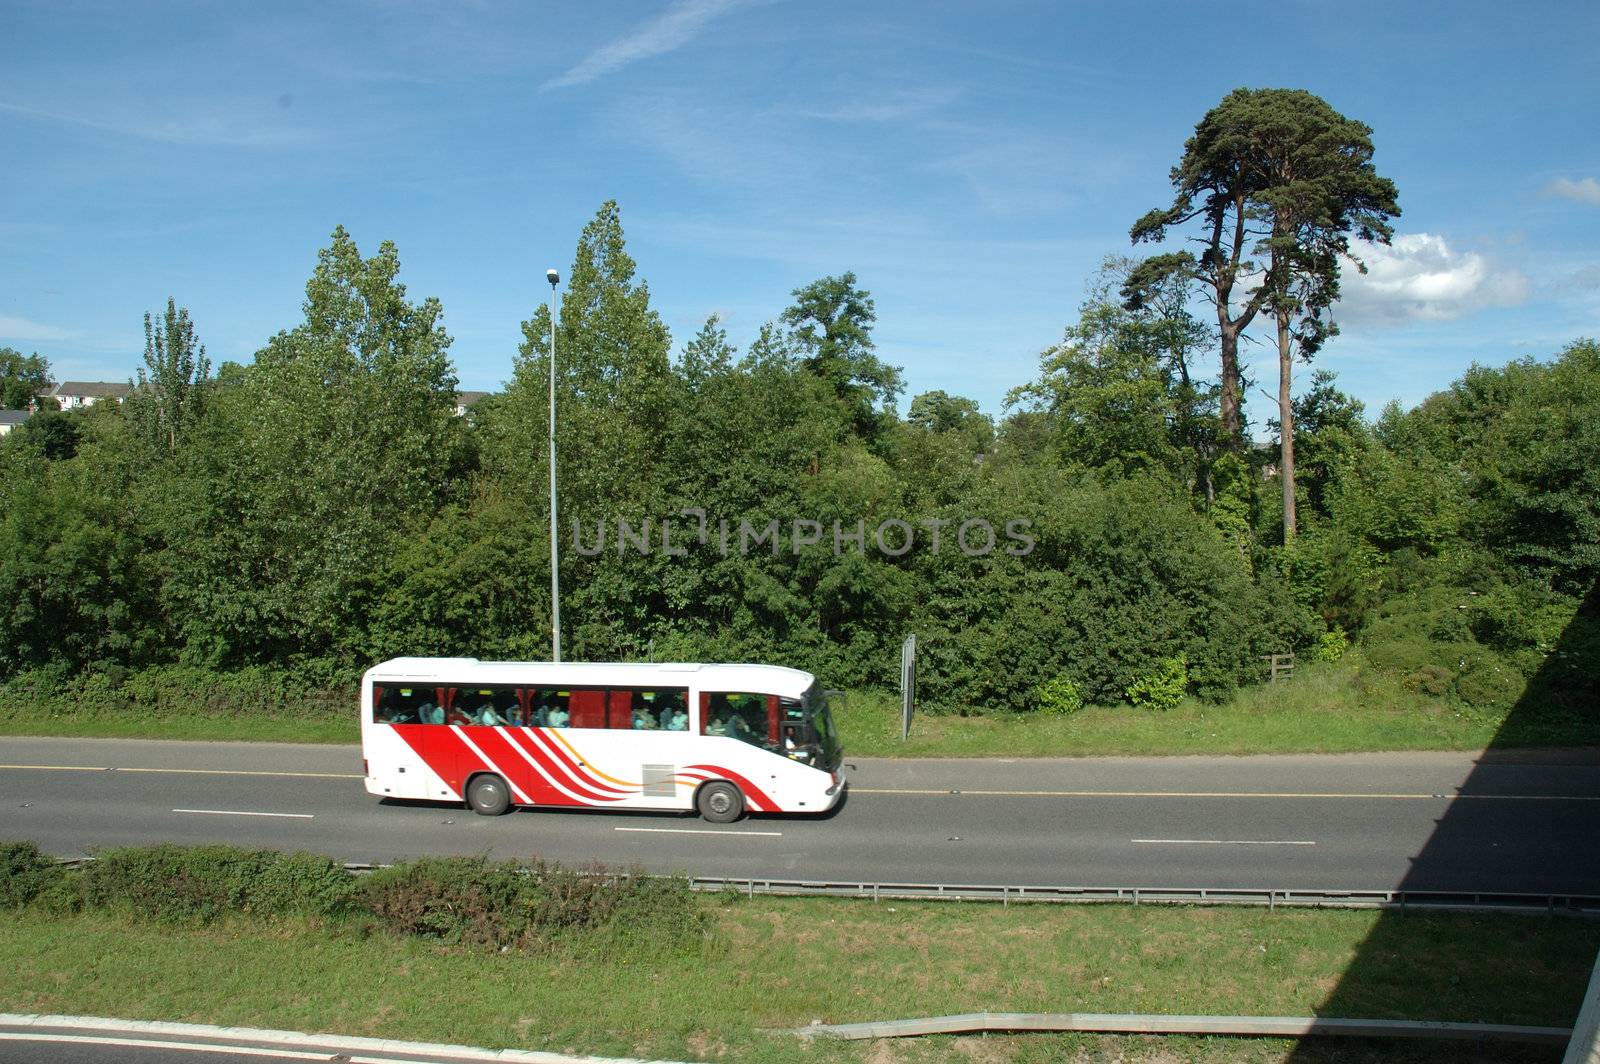 Bus on Motorway or freeway